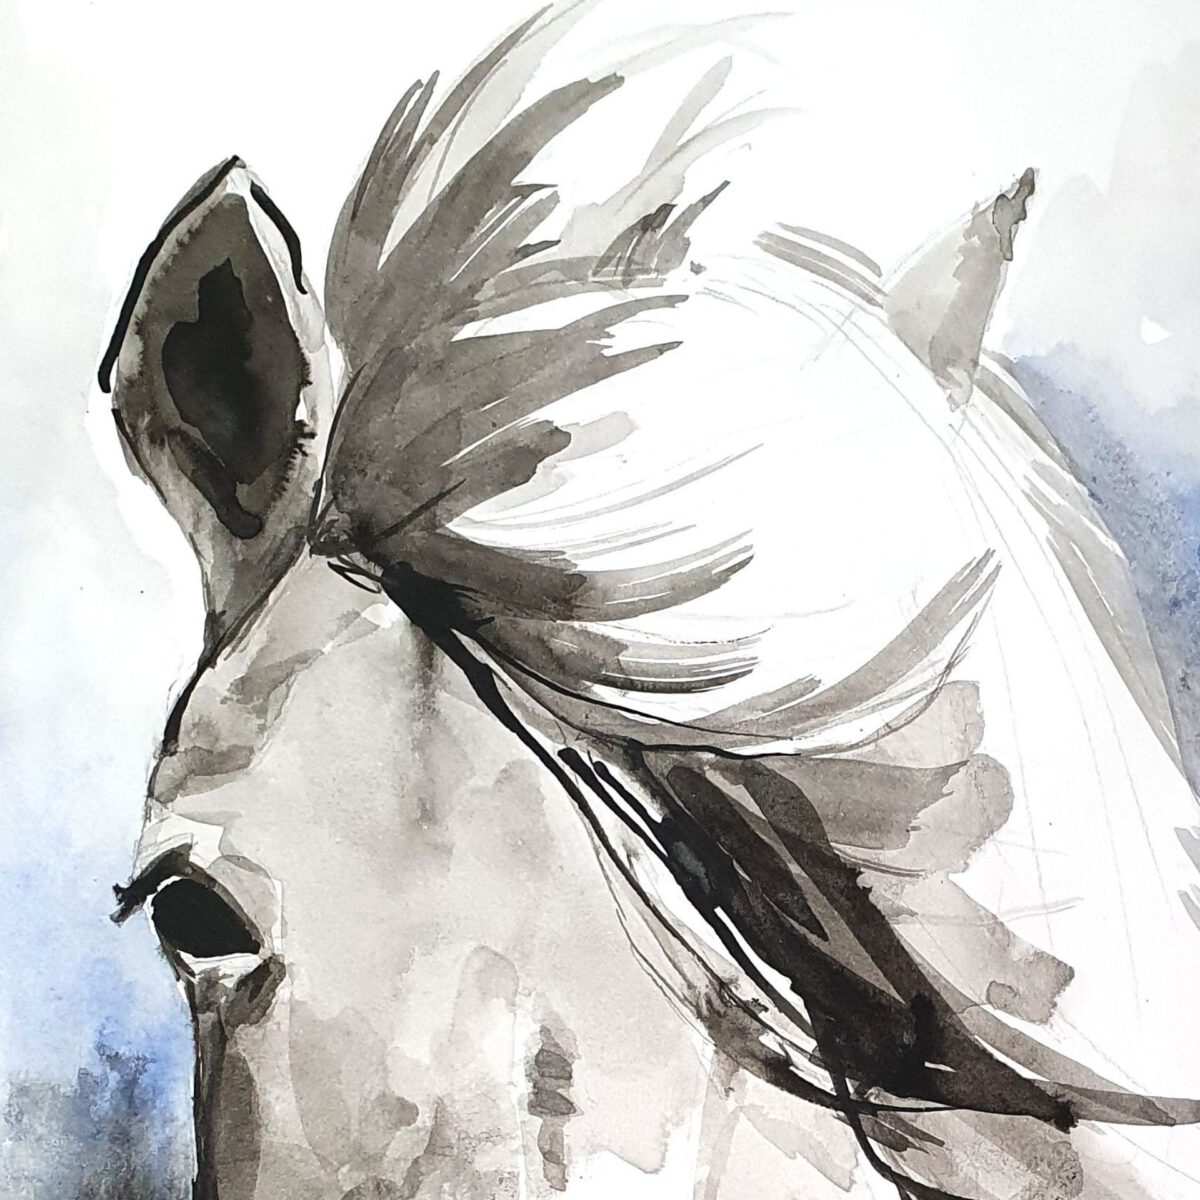 סוס אצילי ציור מקורי ציור בעלי חיים ציורי חיות אמנות אמנים גלריה לאמנות צבעי מים אקוורל אנה רדיס anna radis